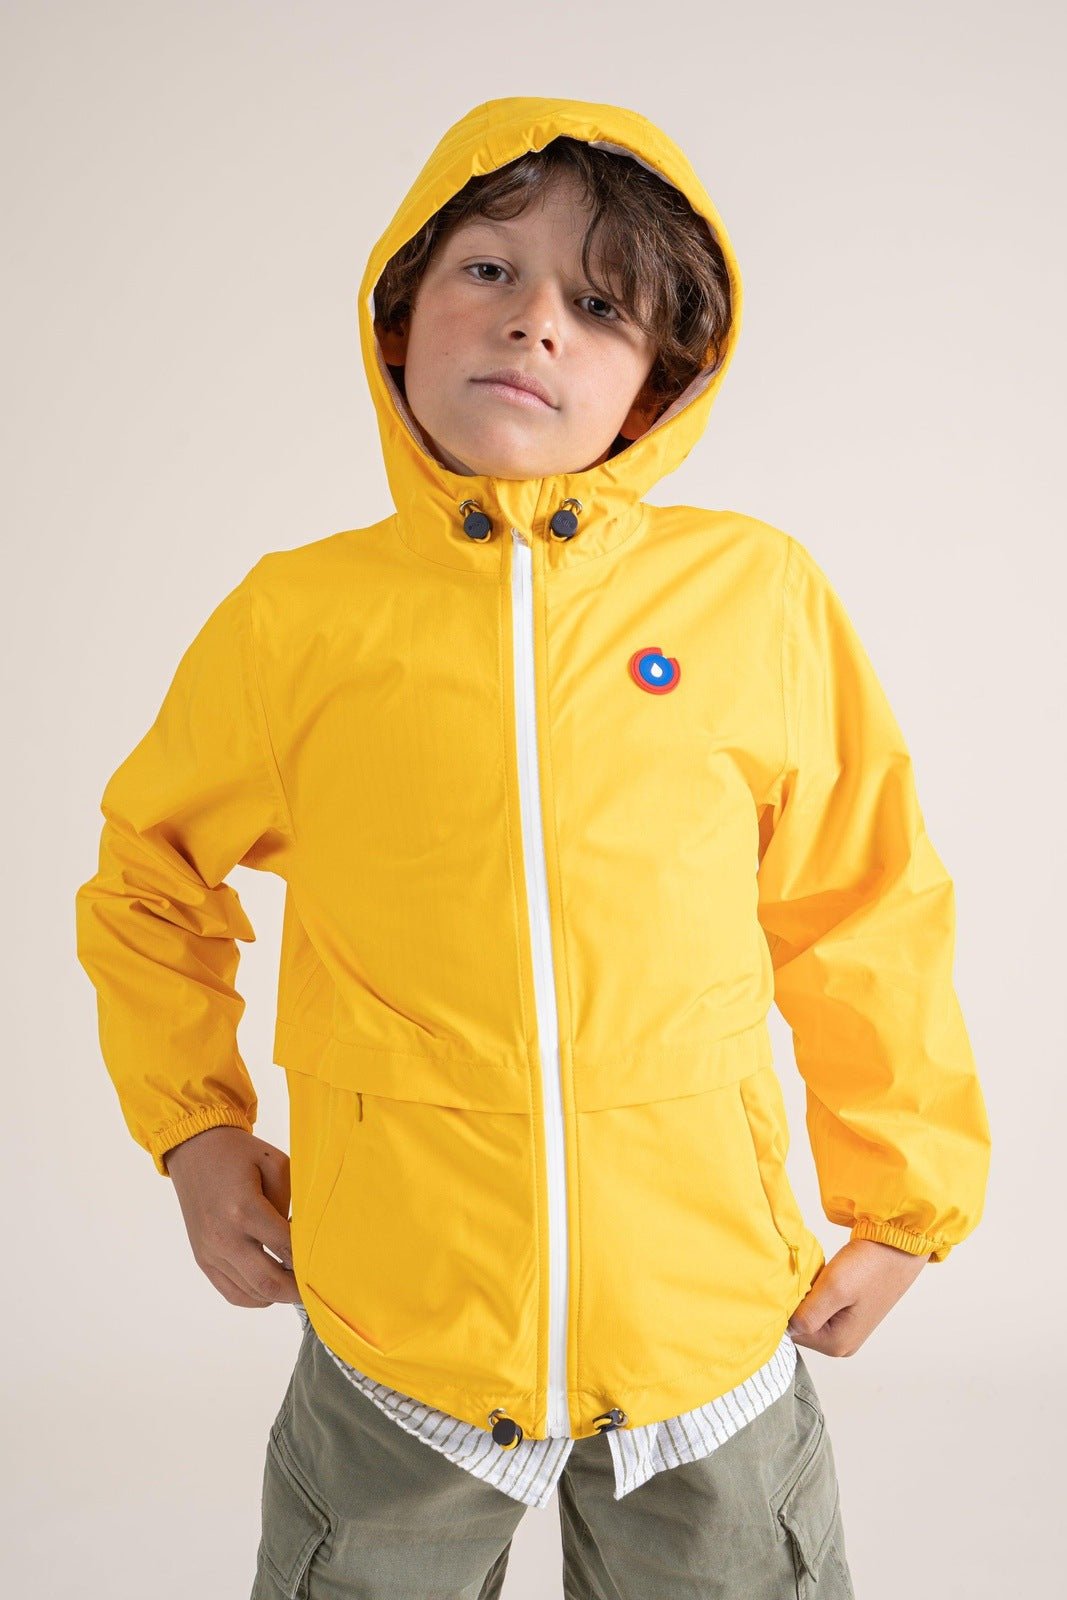 Bastille - Children's windbreaker raincoat - Flotte #couleur_citron